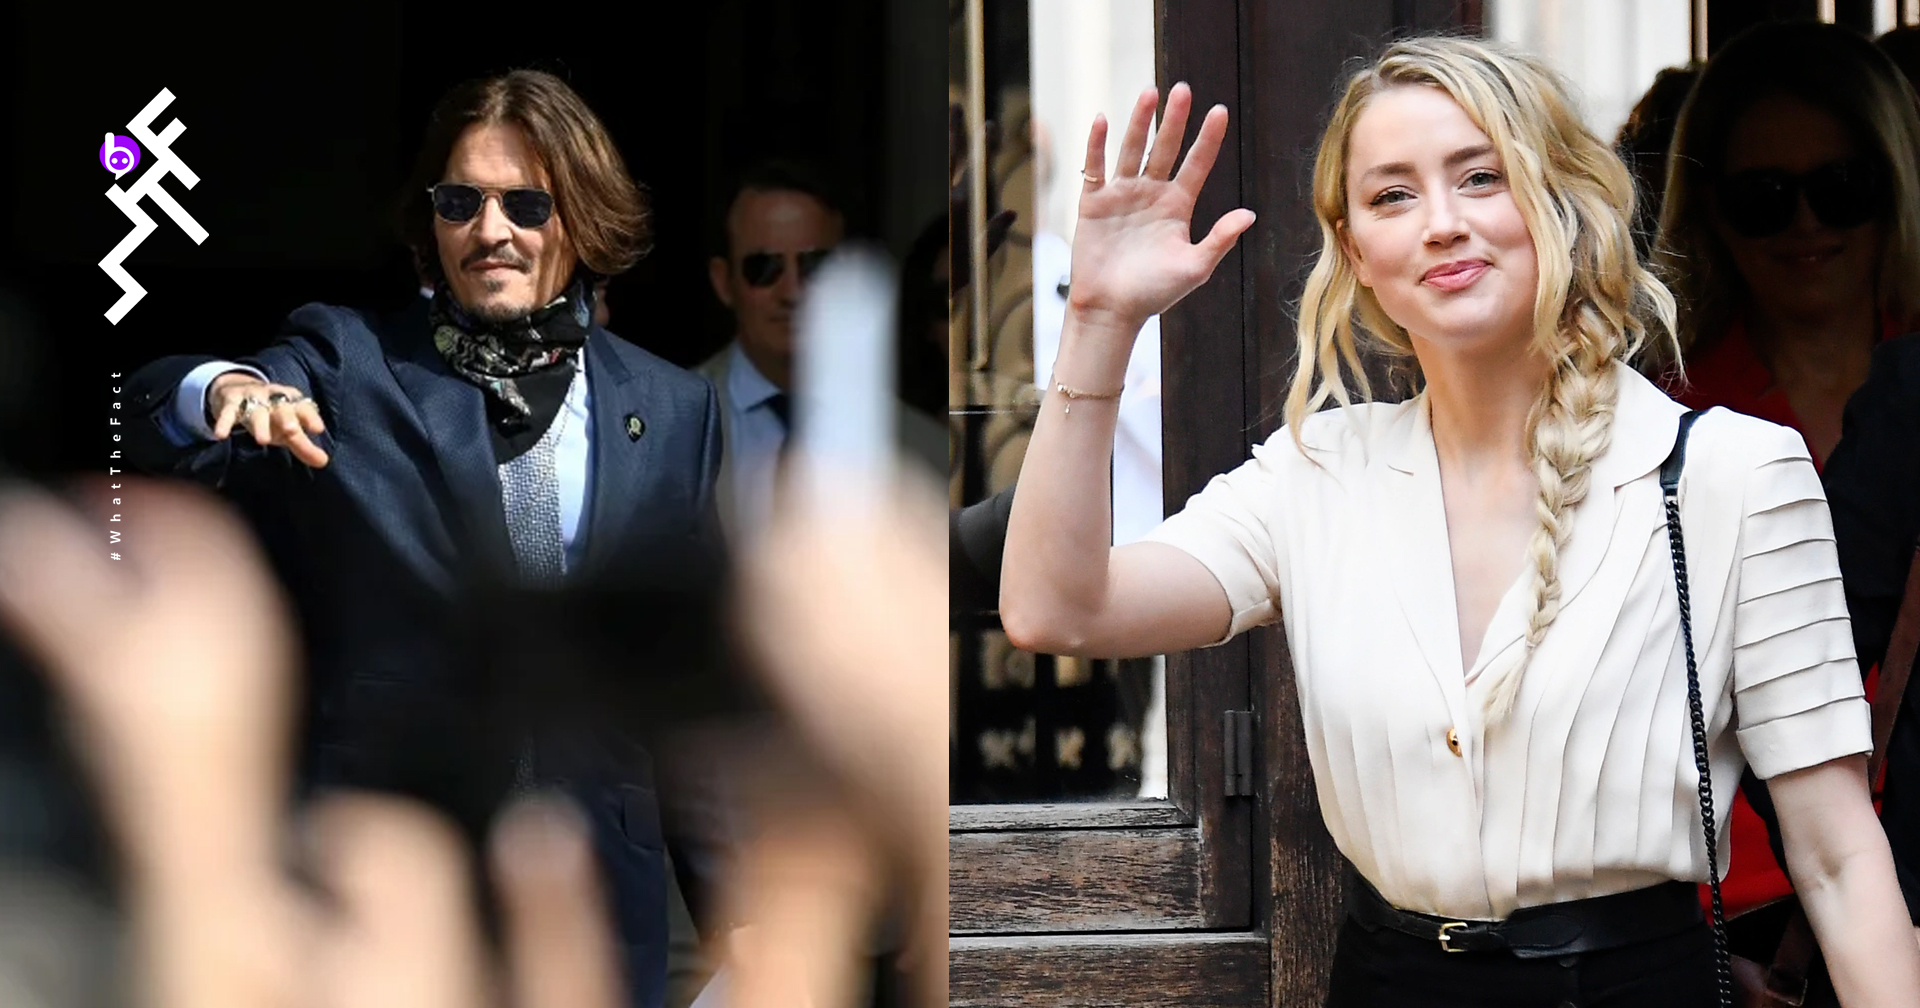 ศาลตัดสินให้ Johnny Depp แพ้คดีสื่อ The Sun ที่กล่าวหาว่าเขาทำร้าย Amber Heard